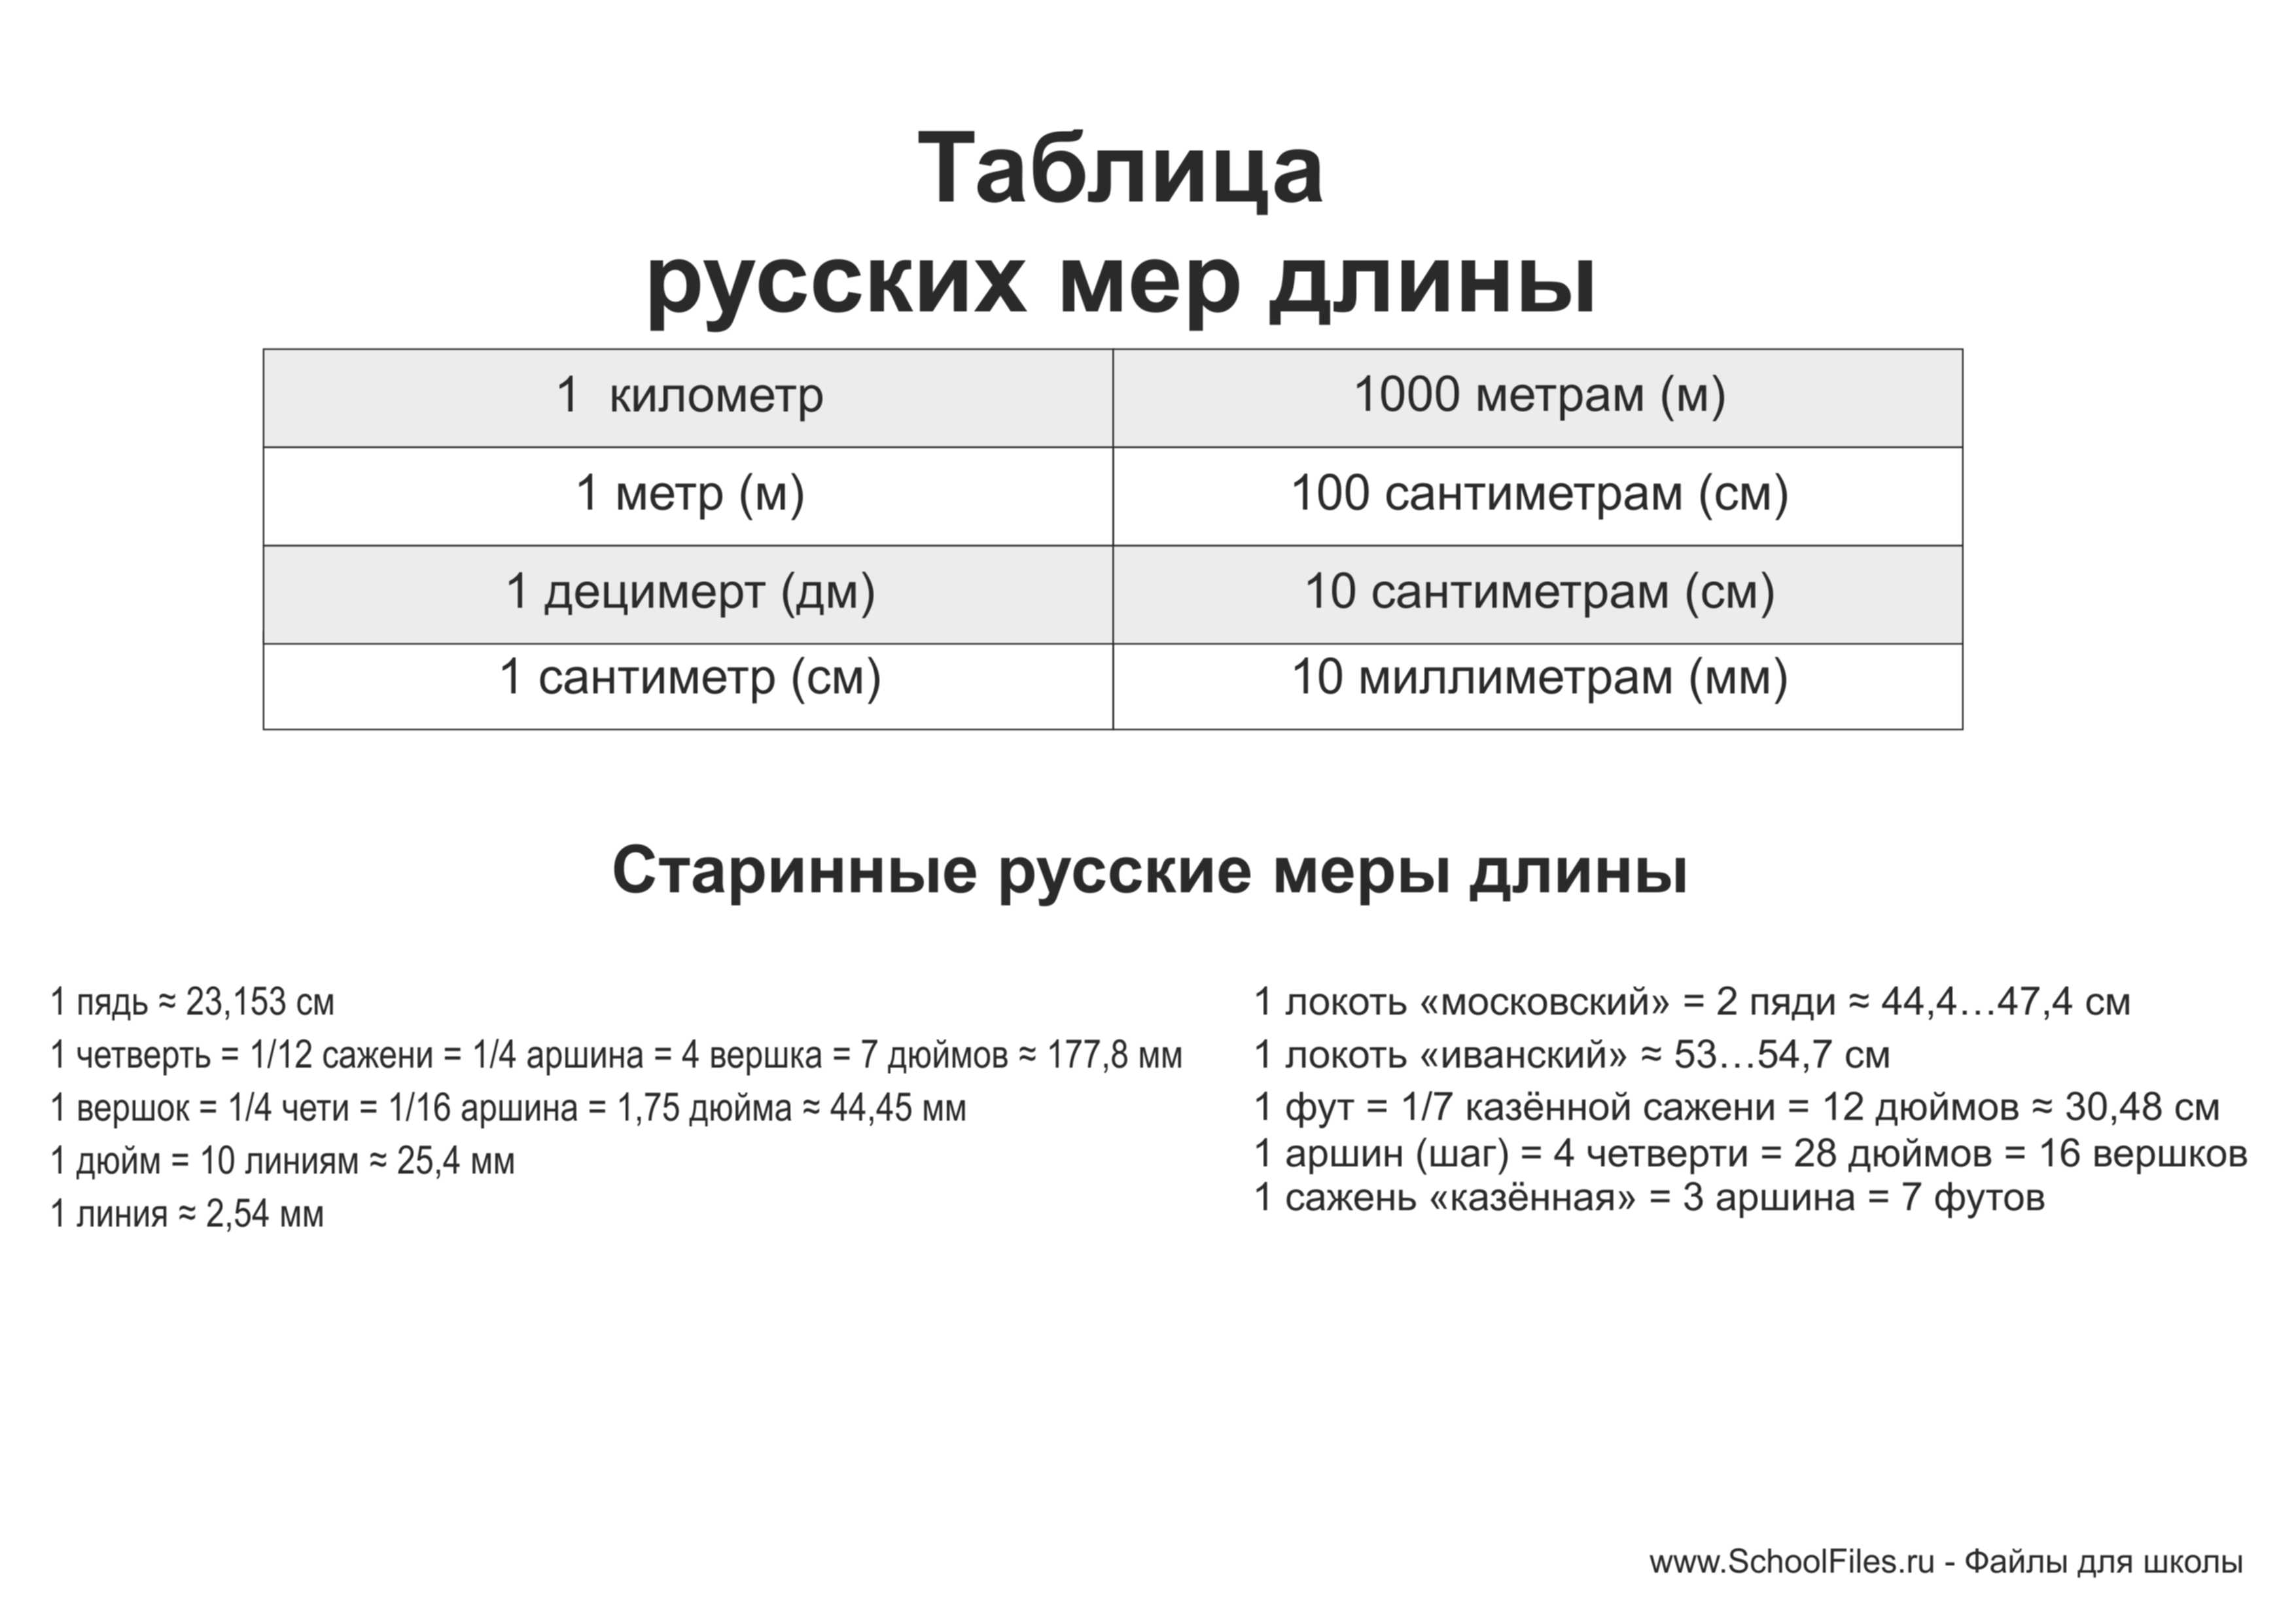 Старинные русские меры длины, веса, объёма